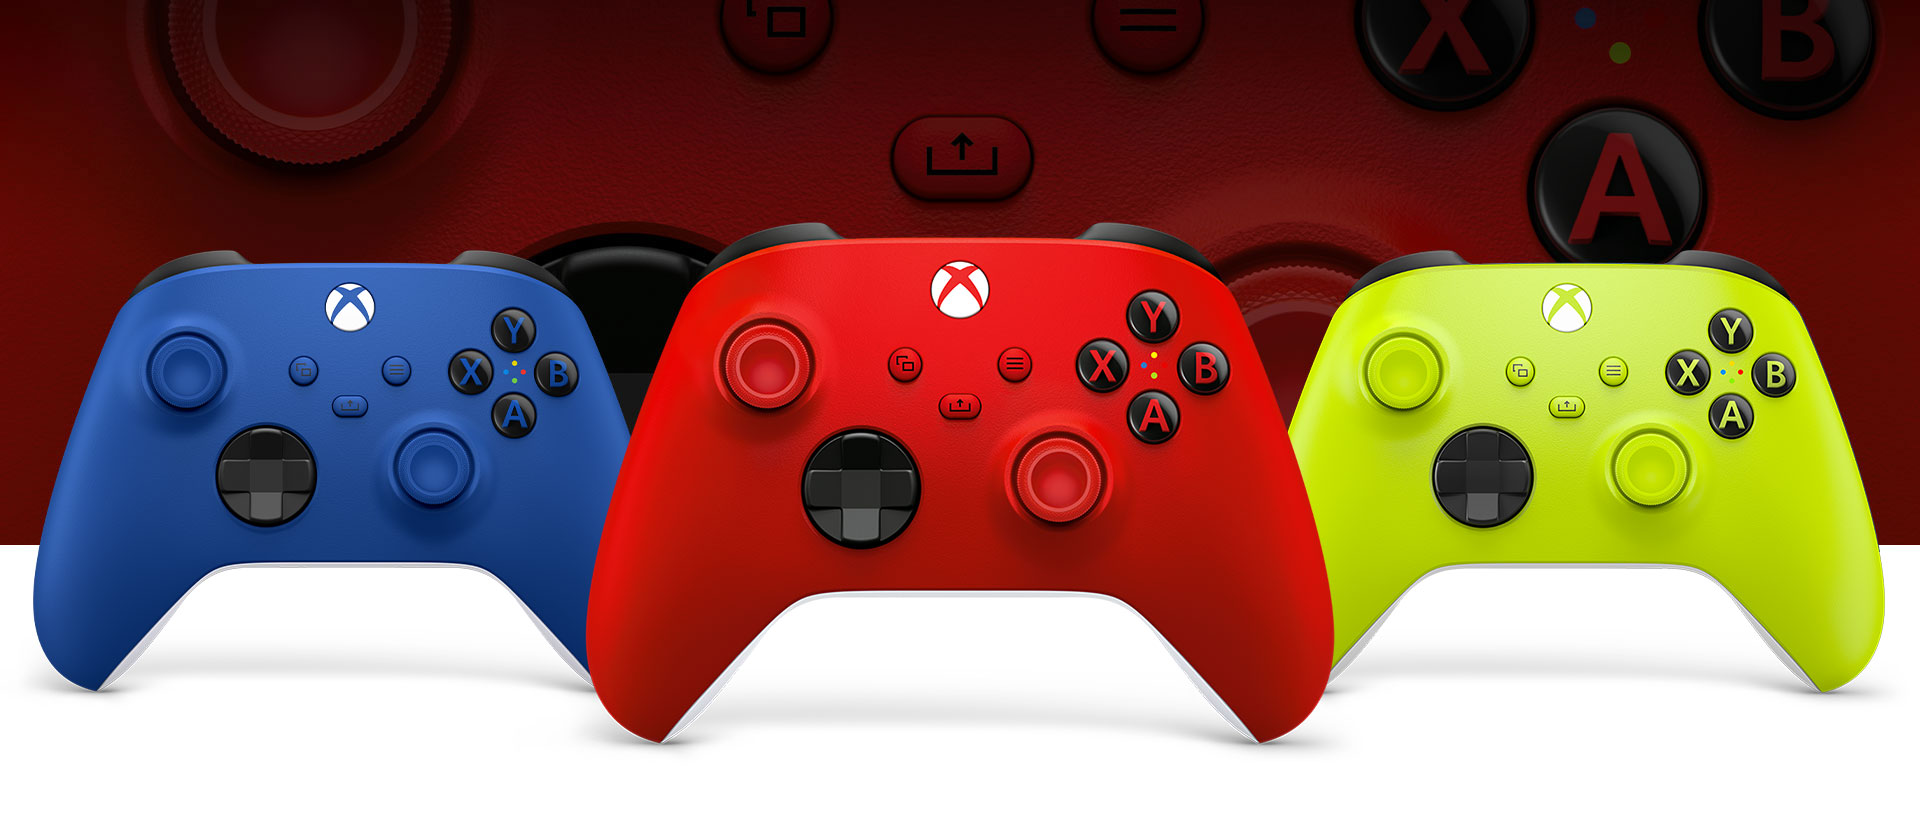 Μπροστινή όψη του ασύρματου χειριστηρίου Xbox σε έντονο κόκκινο, με έντονο μπλε στα αριστερά και ανοιχτό πράσινο στα δεξιά